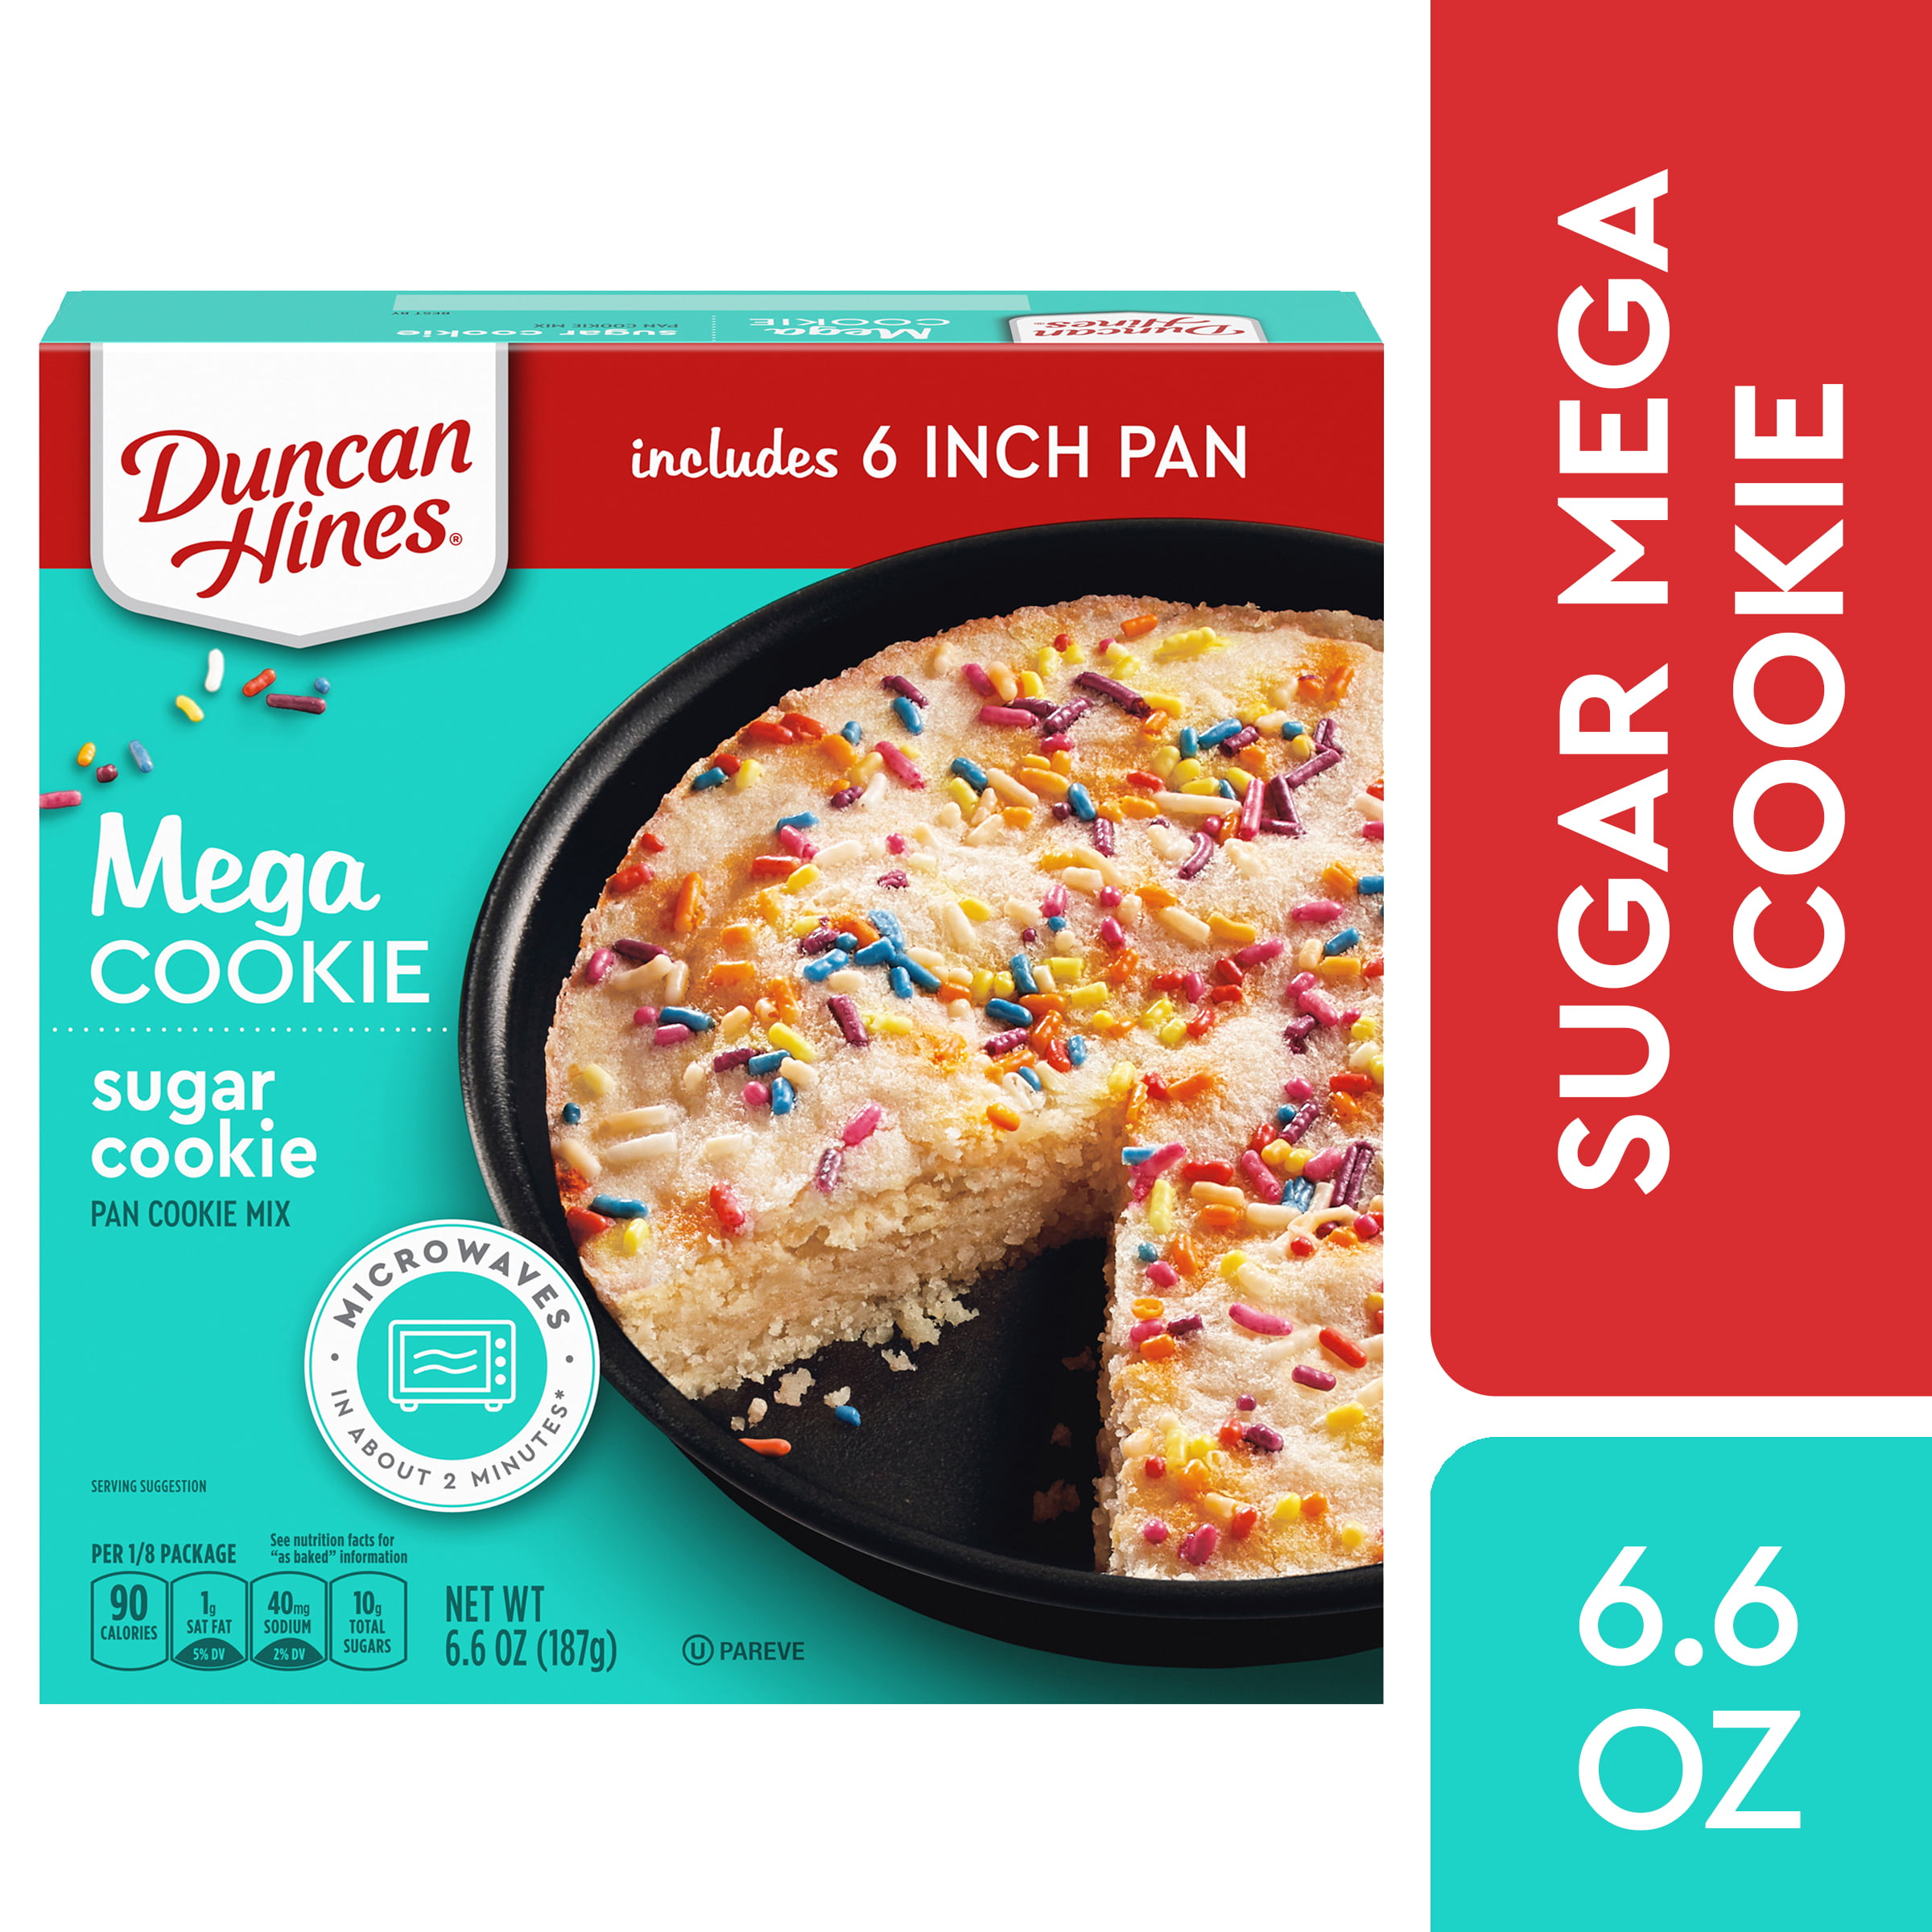 Duncan Hines Mega Cookie Sugar Cookie Pan Cookie Mix With Sprinkles 6 6 Oz Walmart Com Walmart Com